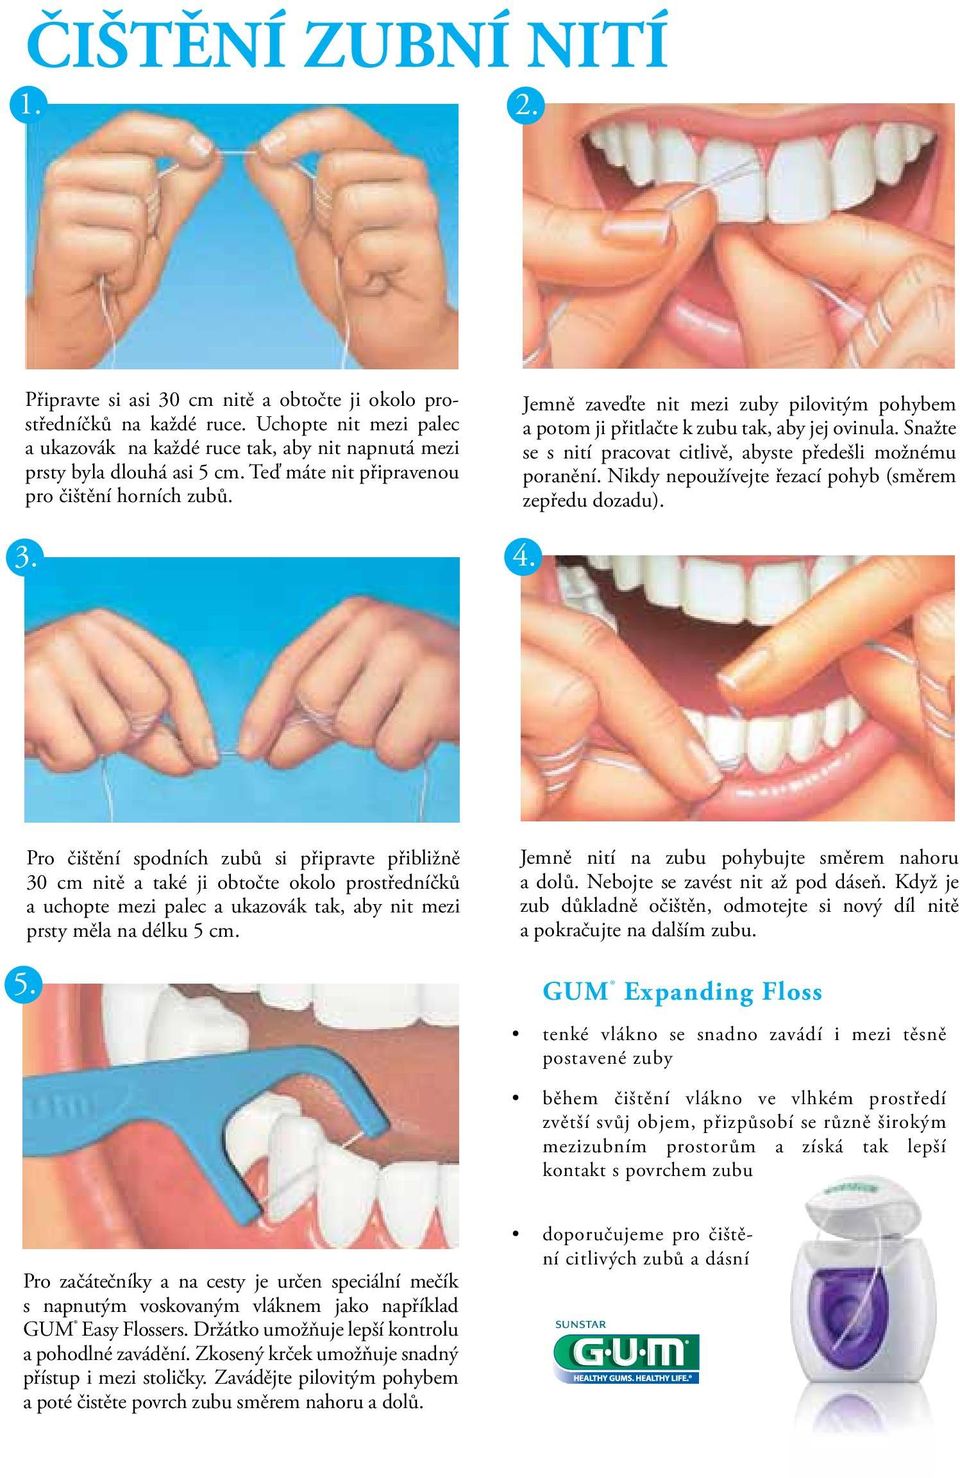 Jemně zaveďte nit mezi zuby pilovitým pohybem a potom ji přitlačte k zubu tak, aby jej ovinula. Snažte se s nití pracovat citlivě, abyste předešli možnému poranění.